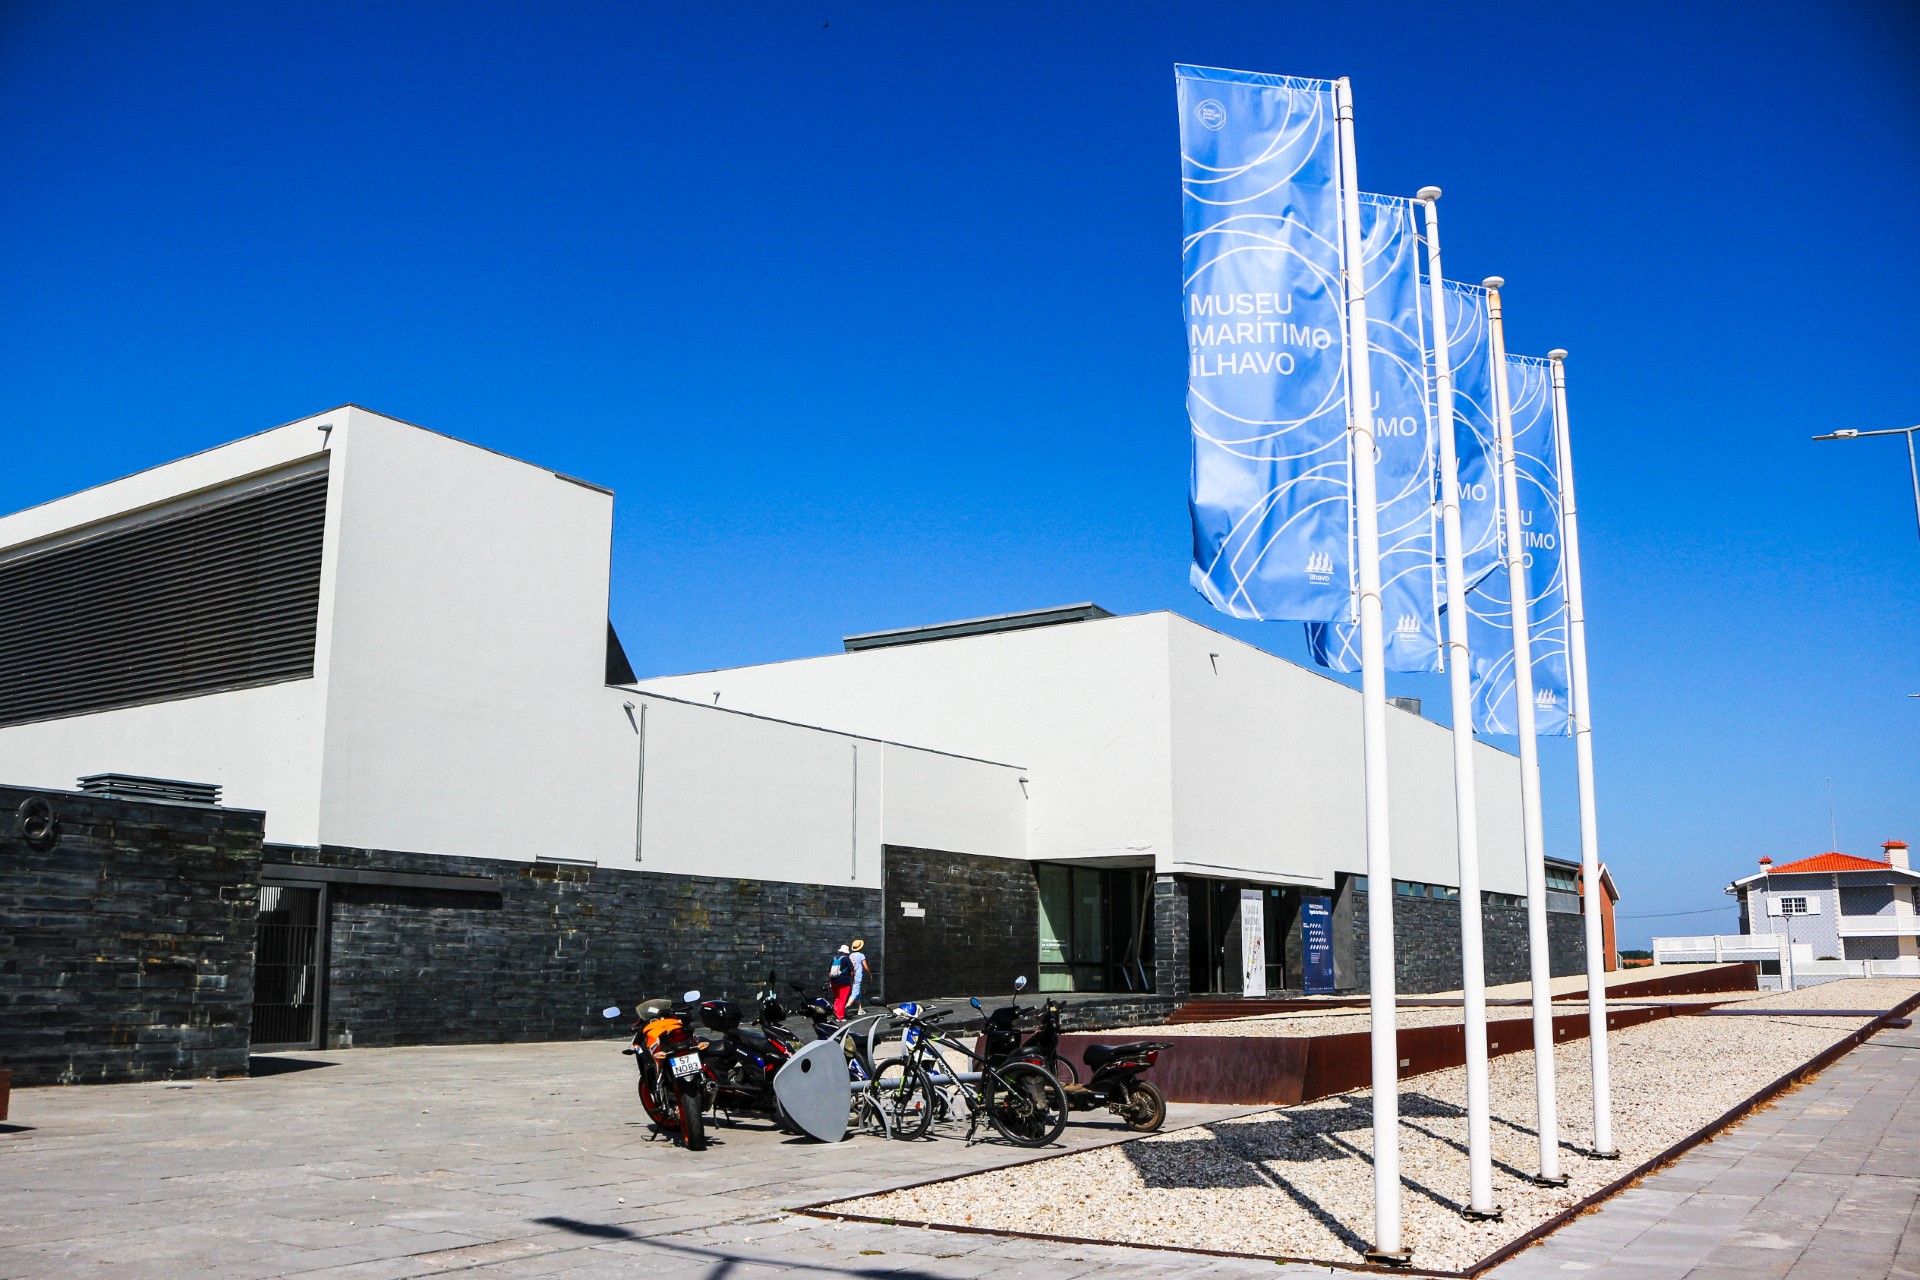 Museu Marítimo de Ílhavo assinala Dia Internacional dos Museus com programação variada